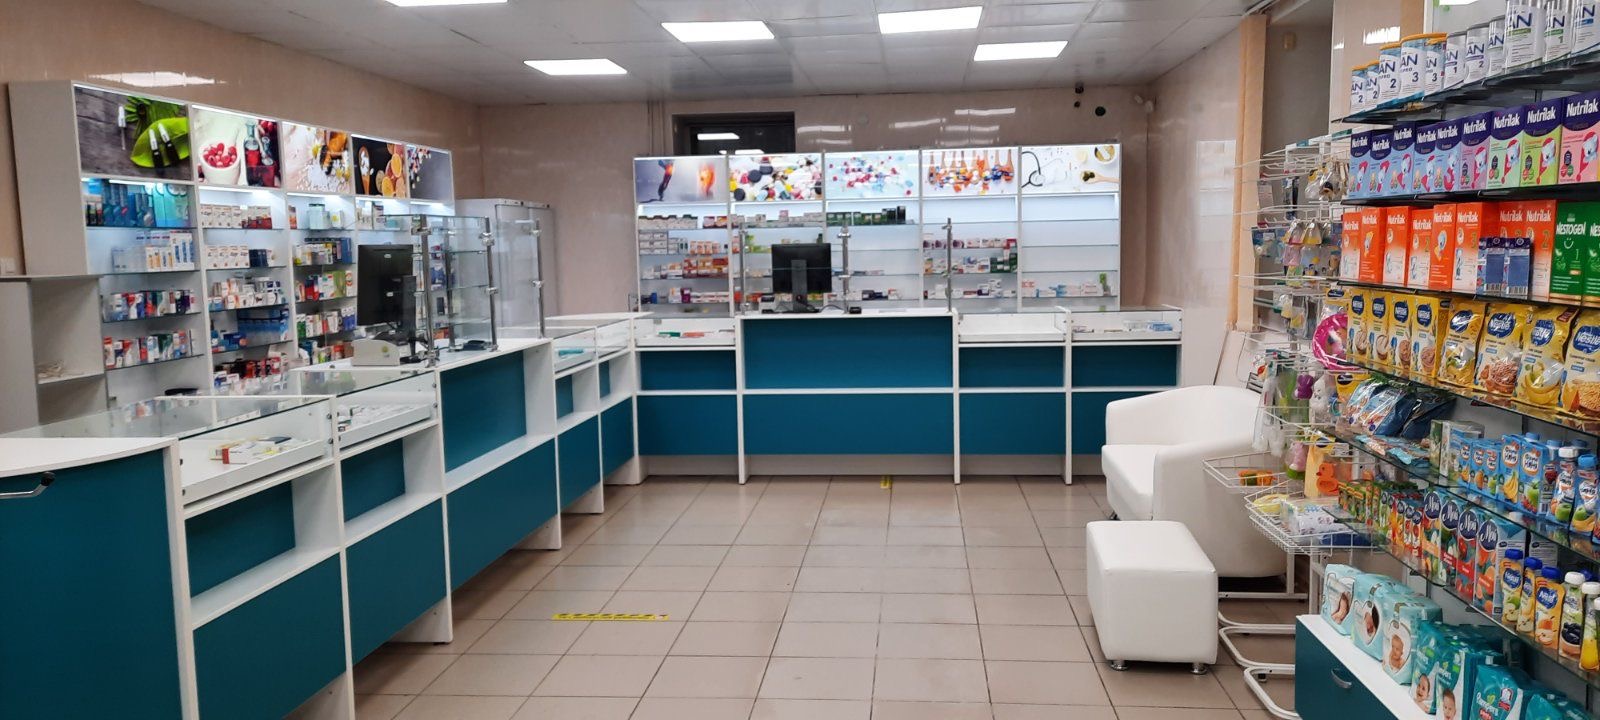 Областной аптечный склад, Челябинск и область 2